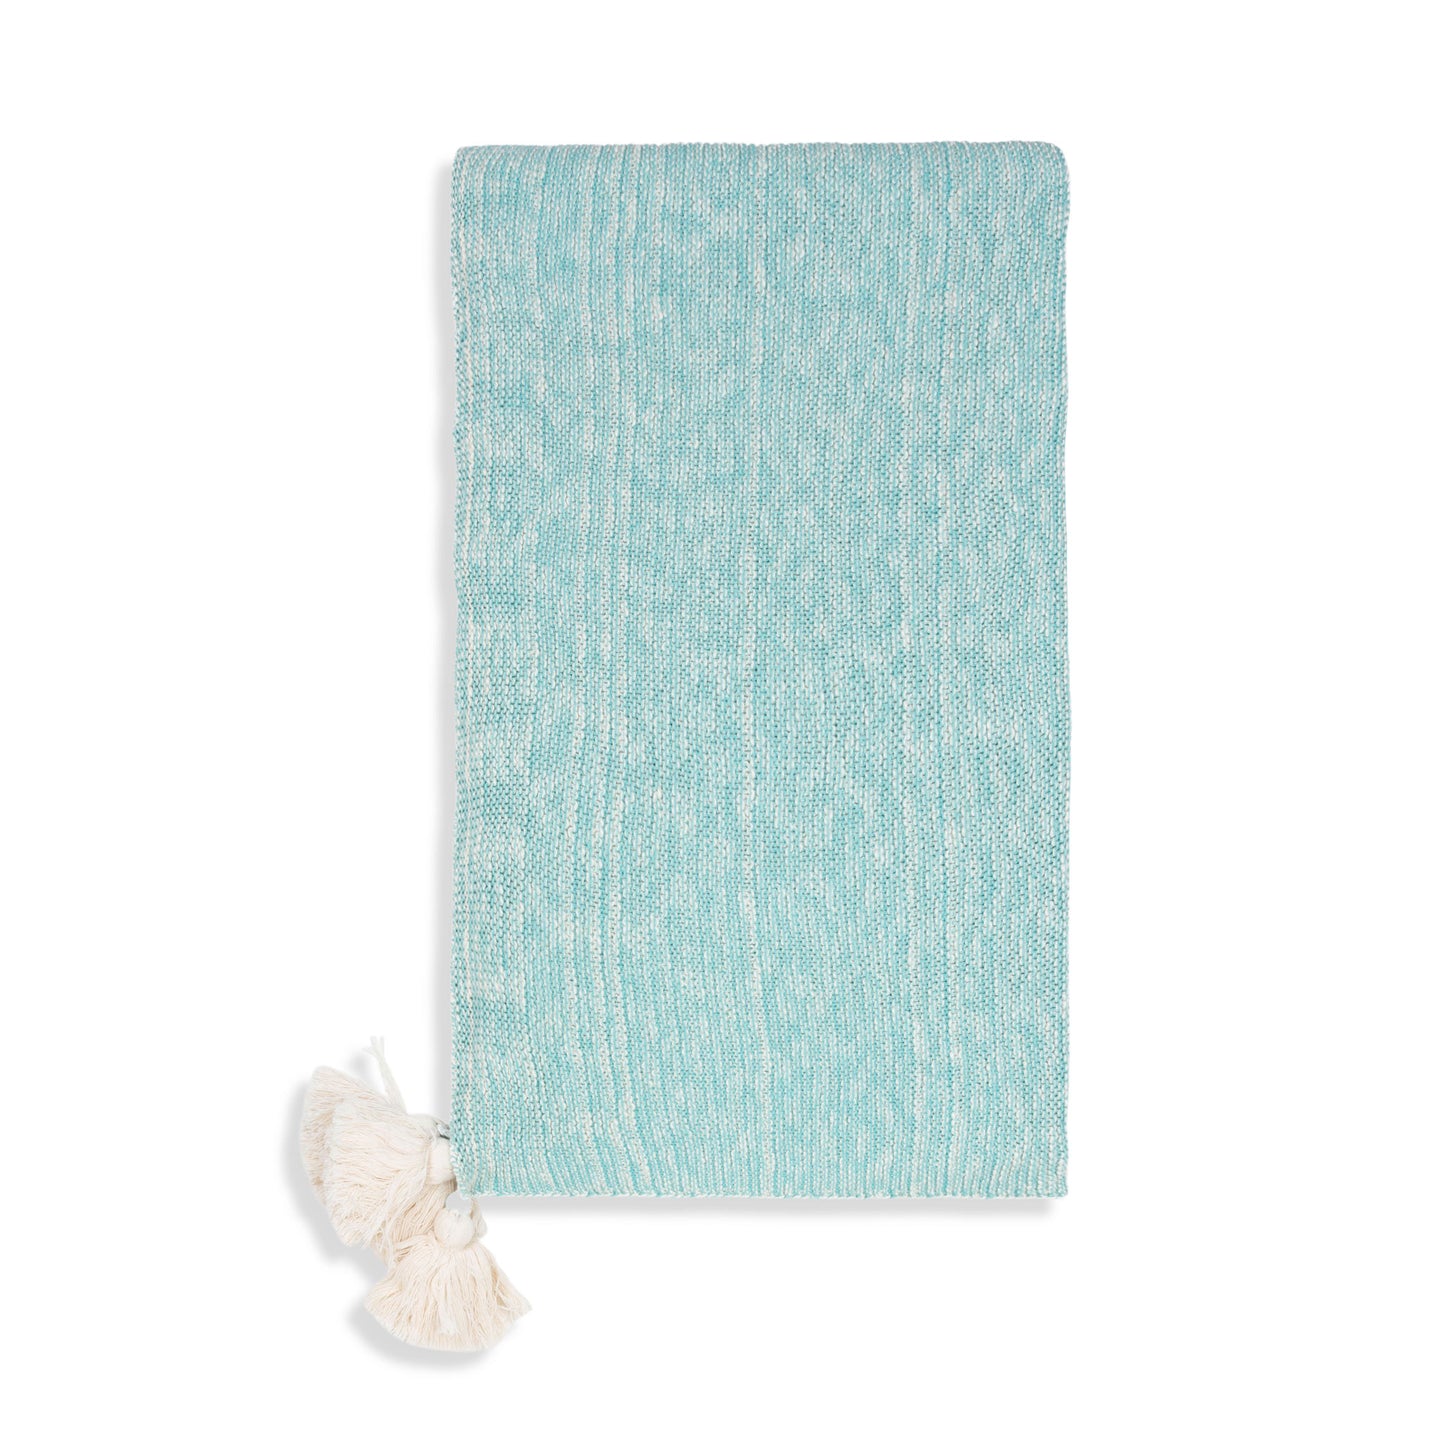 Necalli 50x60" Cotton Decorative Marled Knit Throw Blanket